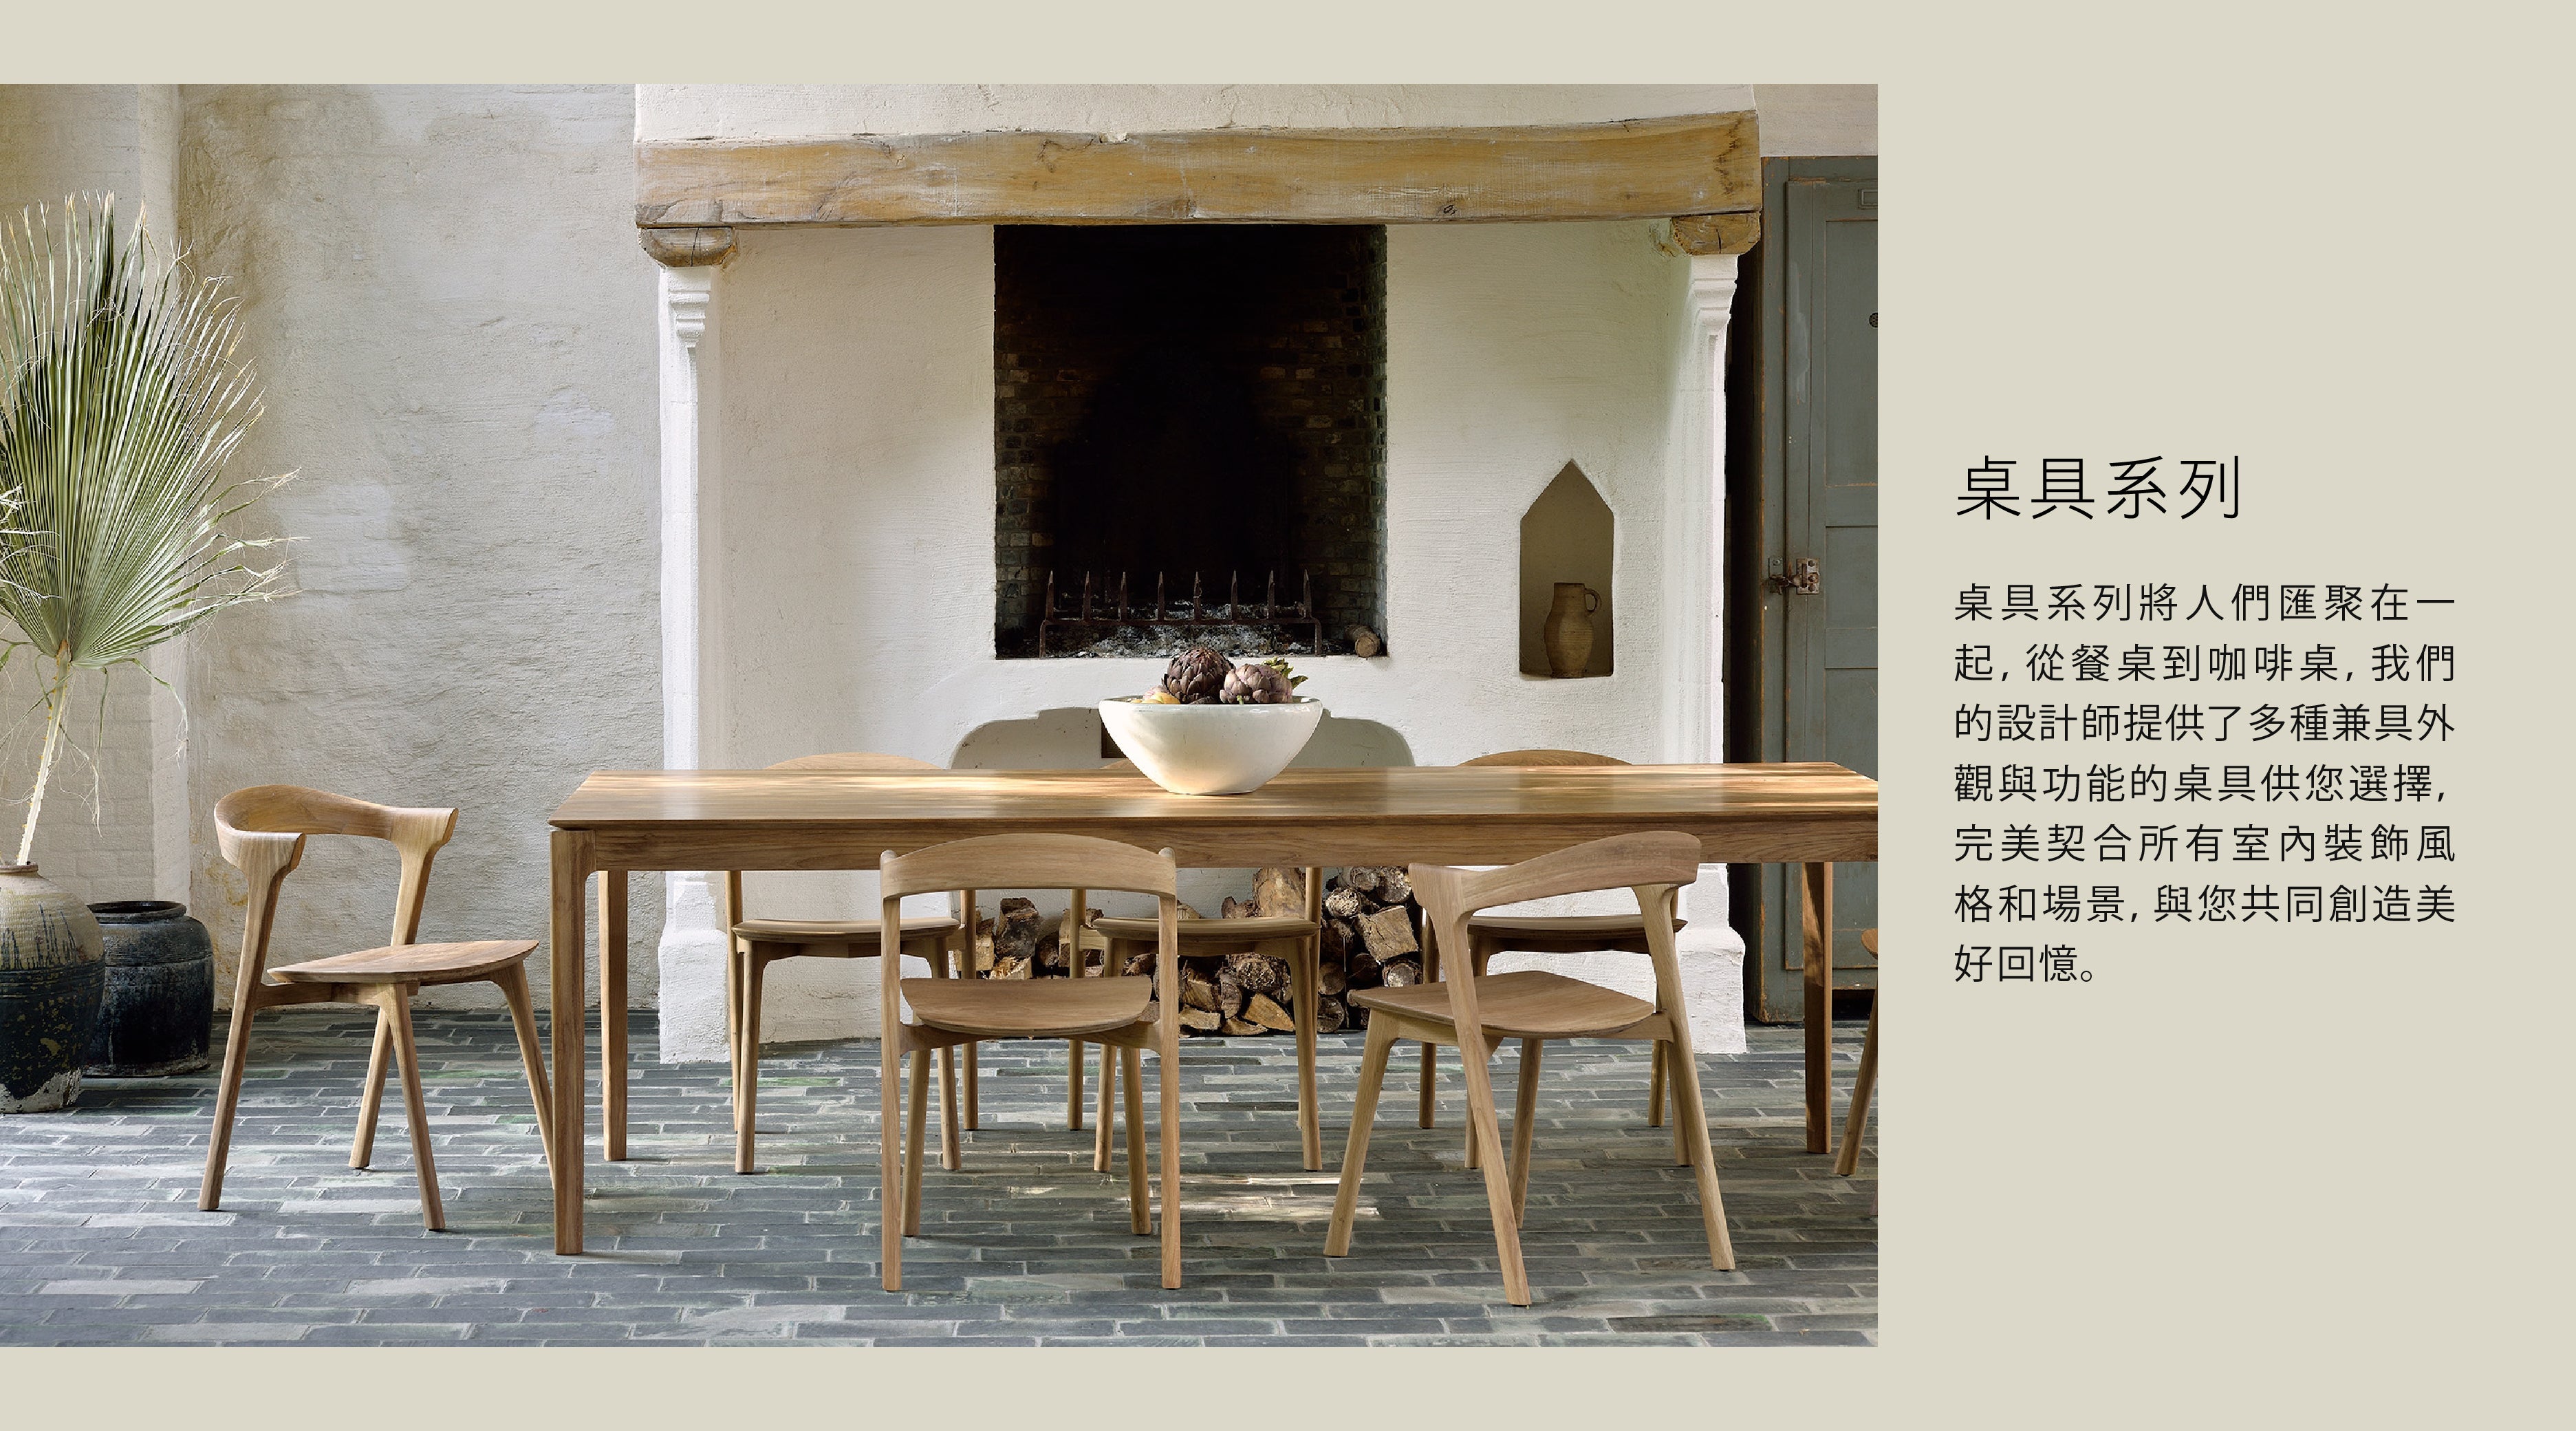 比利時原裝進口實木傢俬 - 餐桌系列 -  Mikado系列橡木圓形餐桌